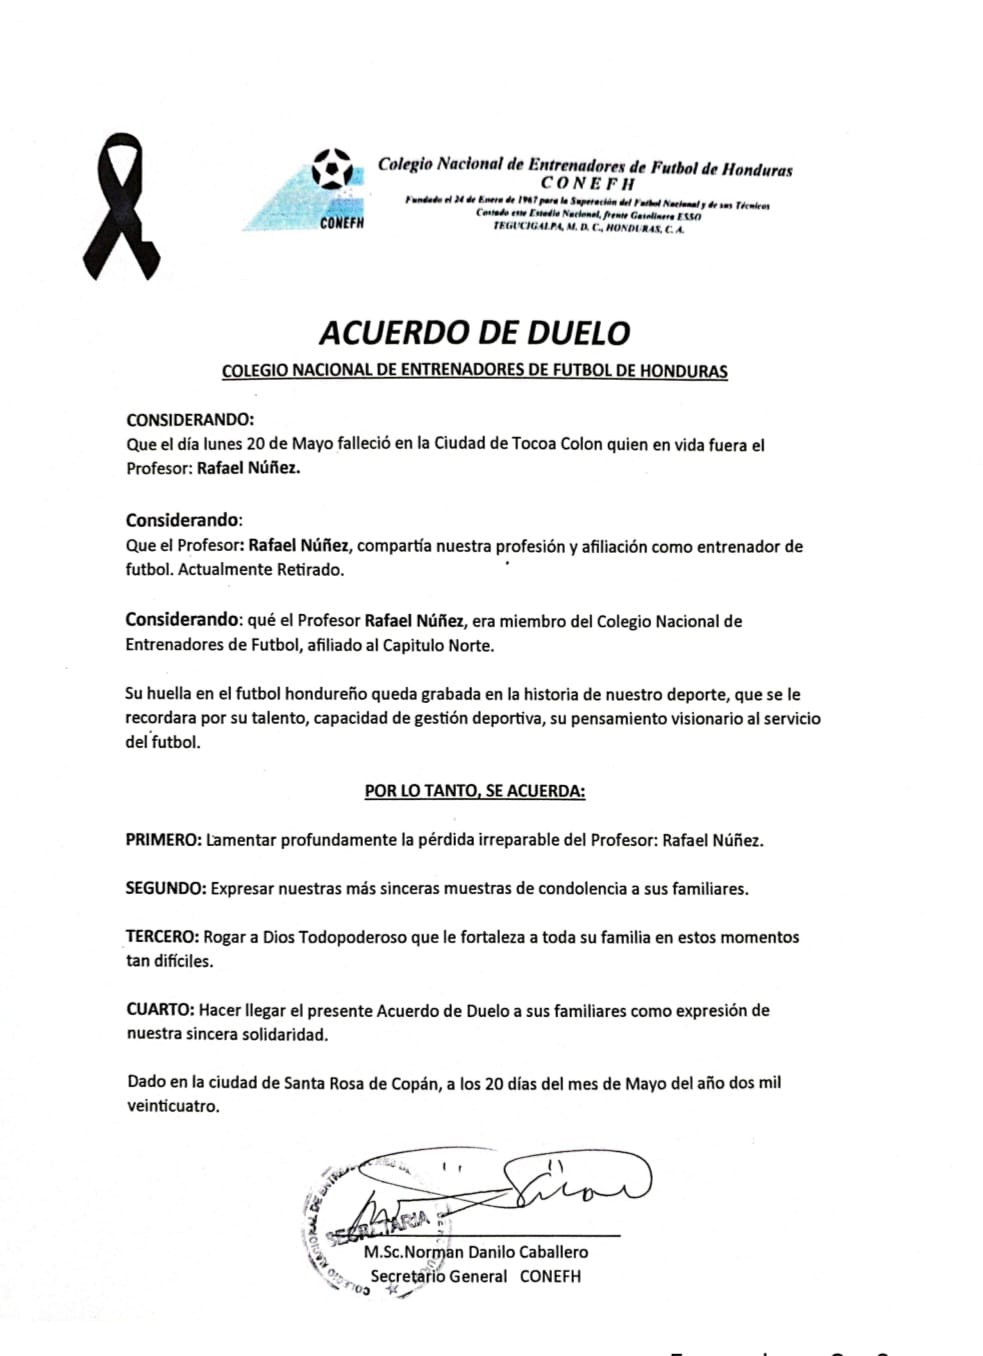 El Colegio de Entrenador emitió un acuerdo de duelo en memoria de Rafael "Paciencia" Núñez.